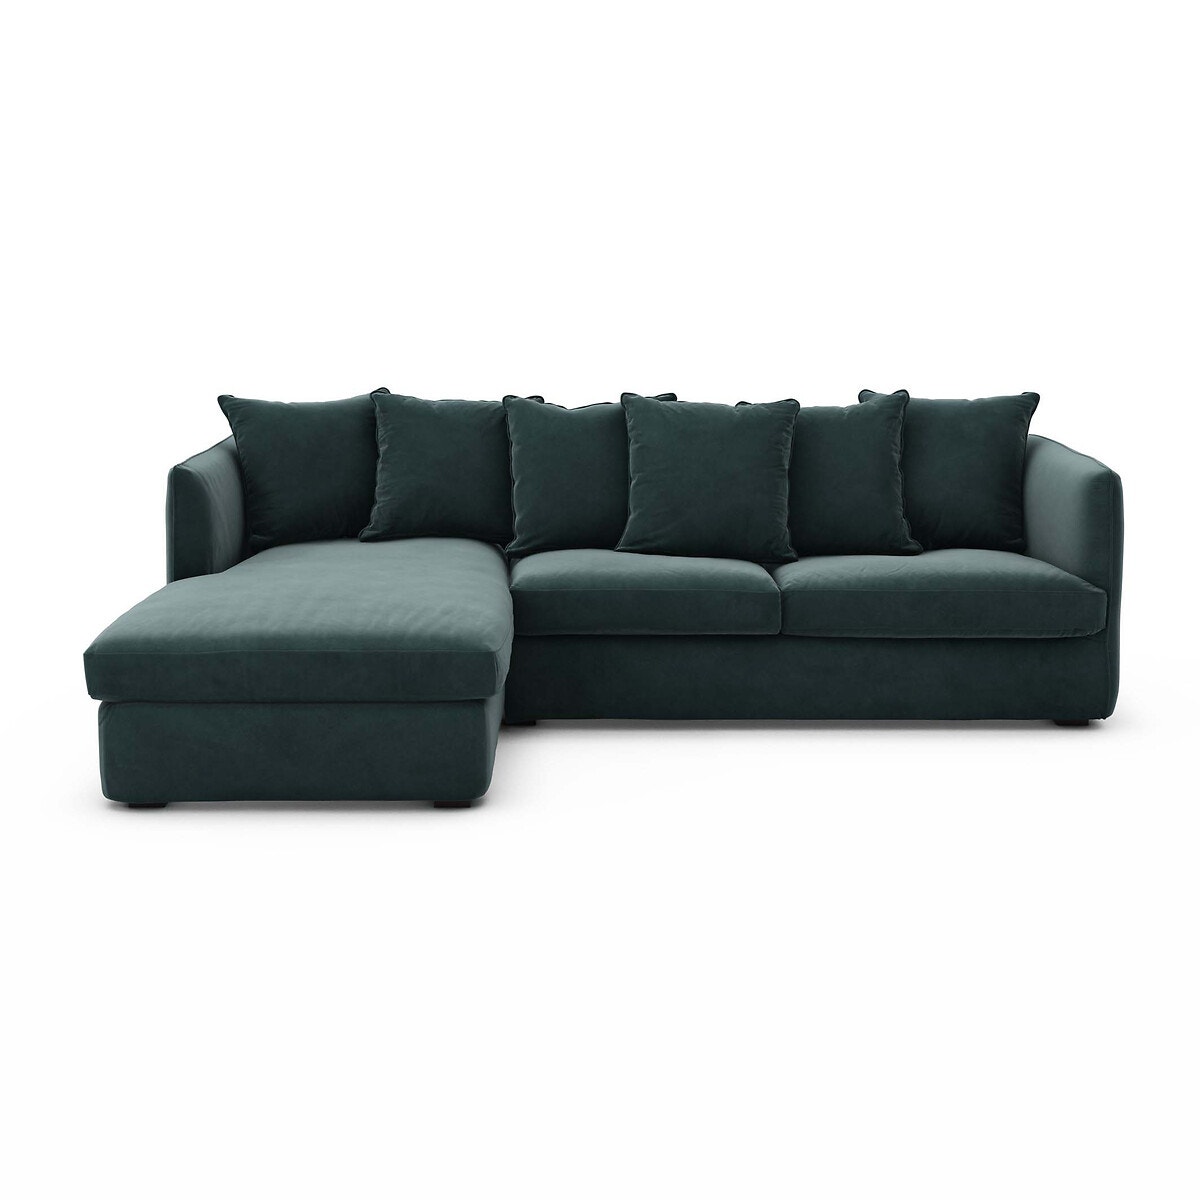 Σπίτι > Έπιπλα > Καθιστικό > Καναπέδες > Γωνιακοί καναπέδες Γωνιακός πτυσσόμενος καναπές-κρεβάτι από βελούδο Μ95xΠ260xΥ82cm